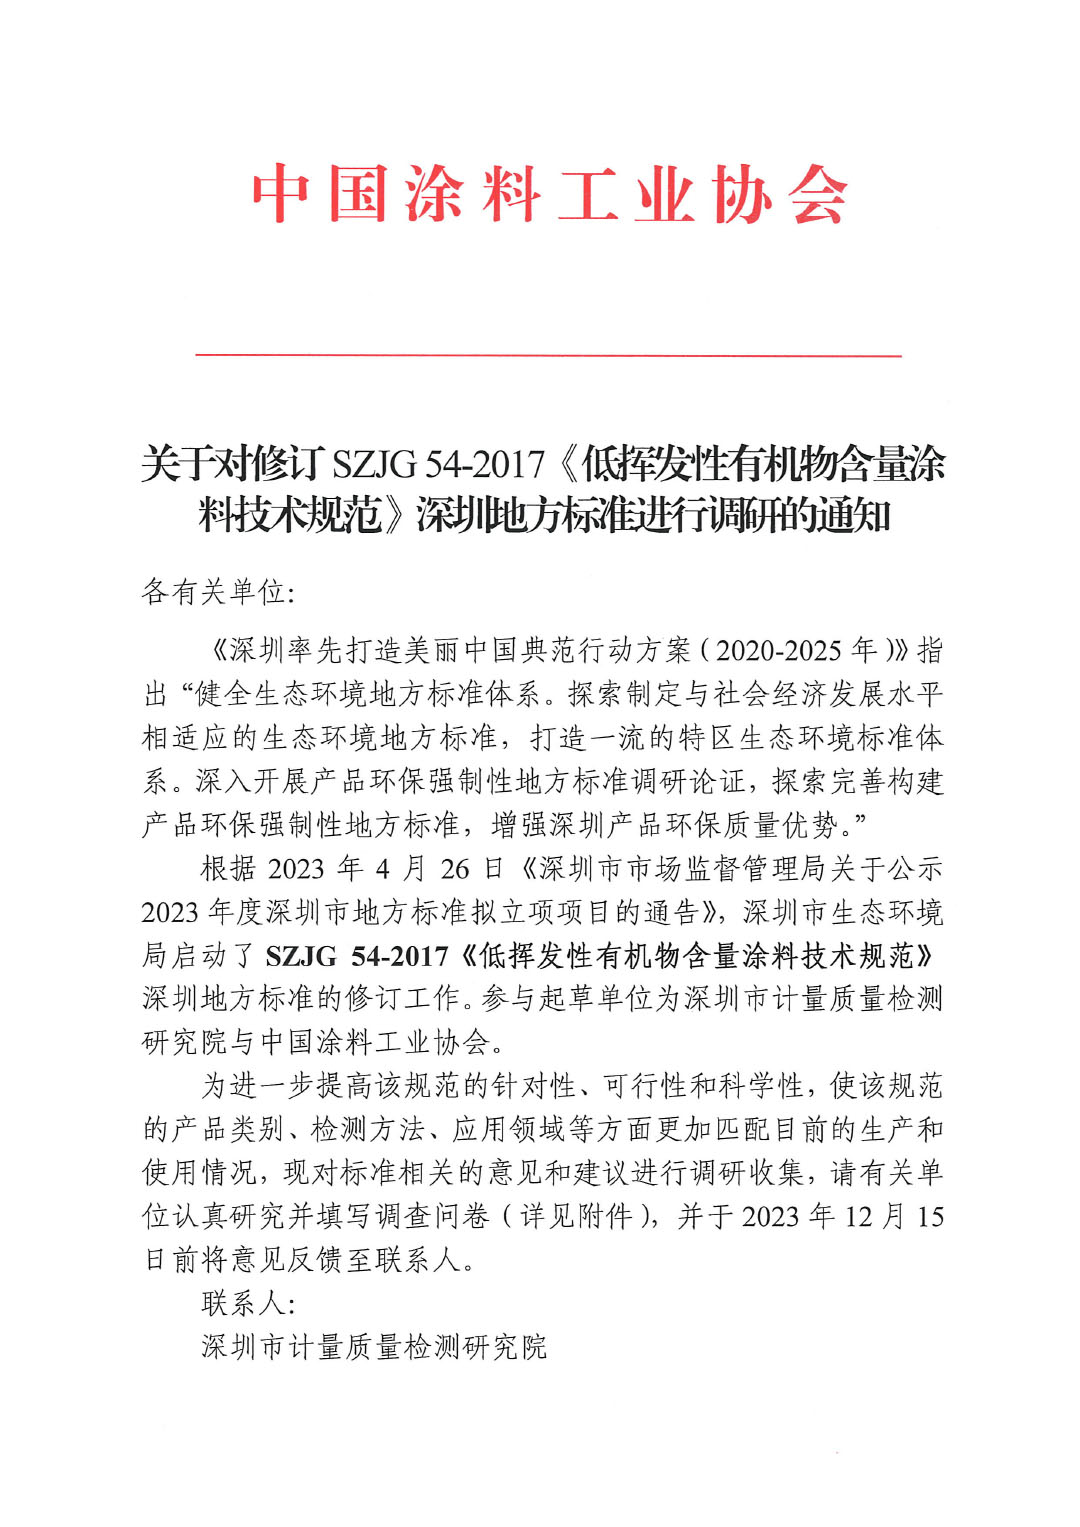 关于对修订SZJG 54-2017《低挥发性有机物含量涂料技术规范》深圳地方标准进行调研的通知-1